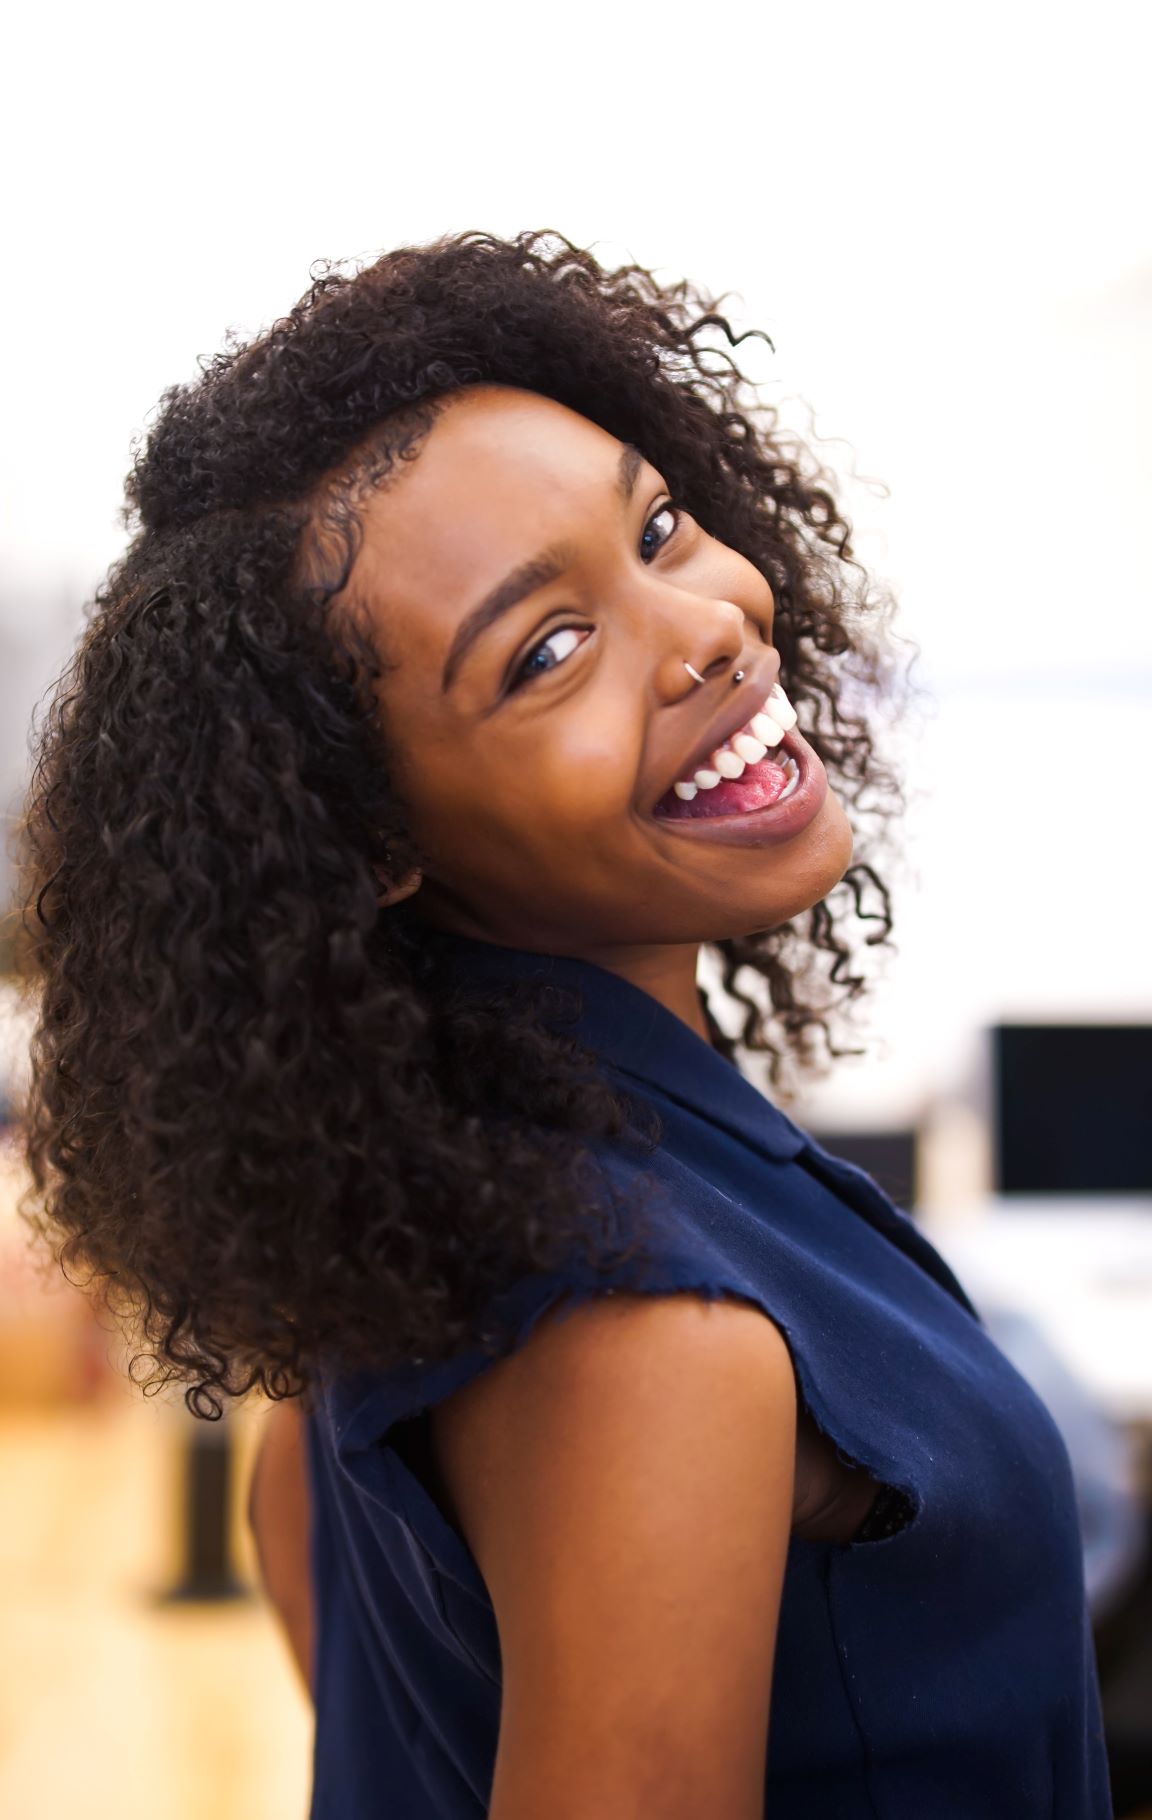 La cure de sébum pour vos cheveux afro : bienfaits et mode d’emploi